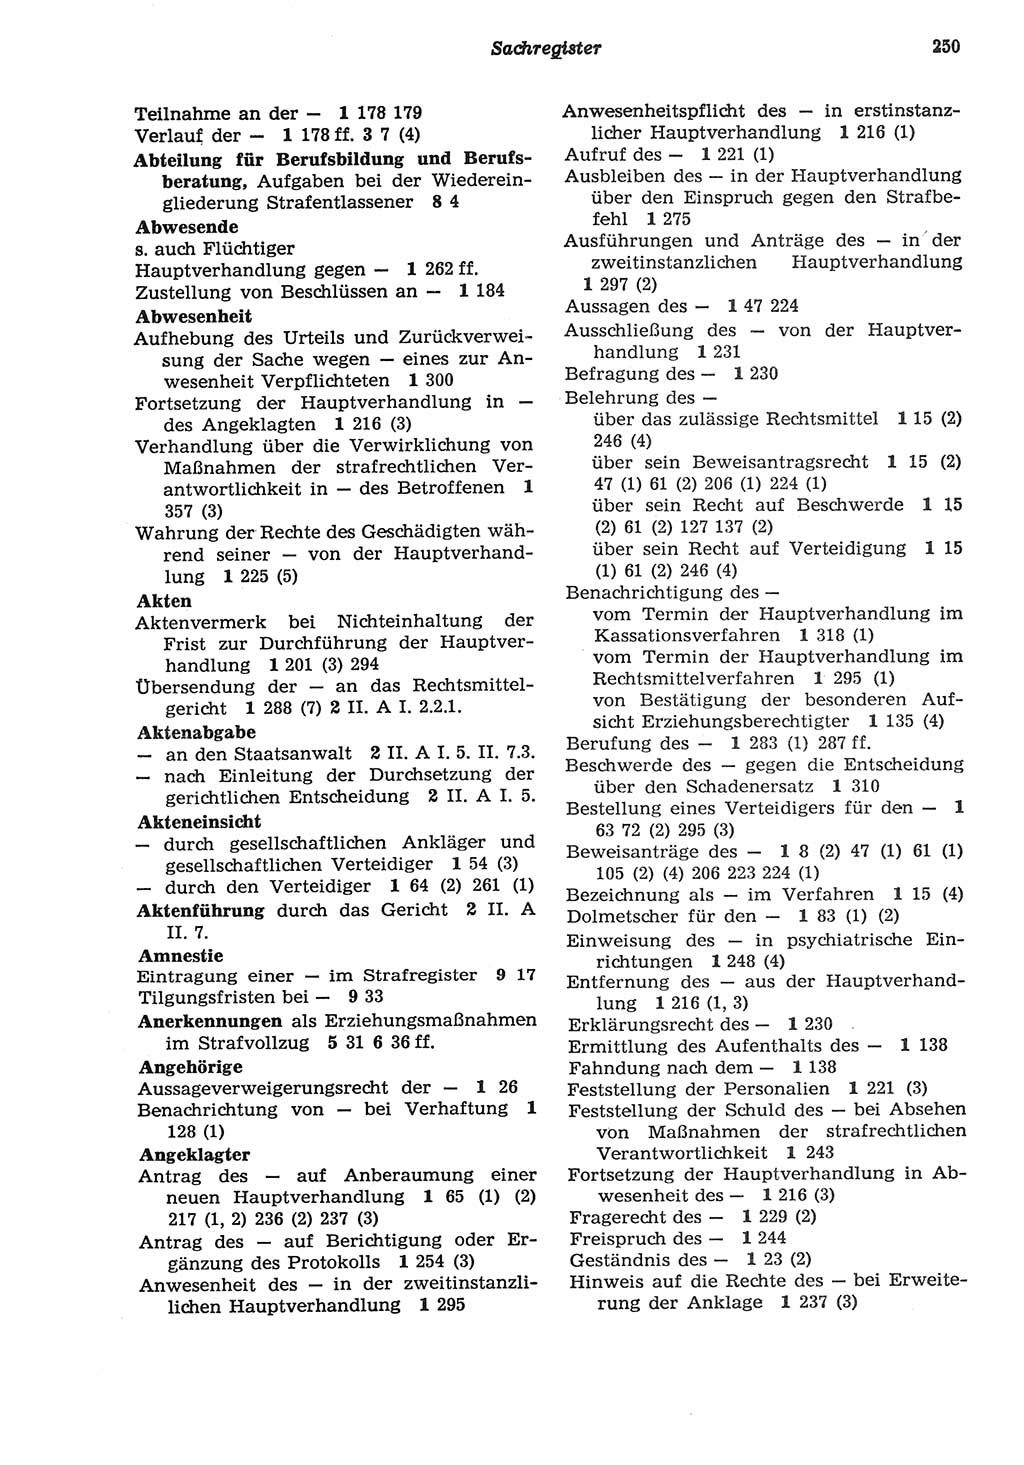 Strafprozeßordnung (StPO) der Deutschen Demokratischen Republik (DDR) sowie angrenzende Gesetze und Bestimmungen 1977, Seite 250 (StPO DDR Ges. Best. 1977, S. 250)